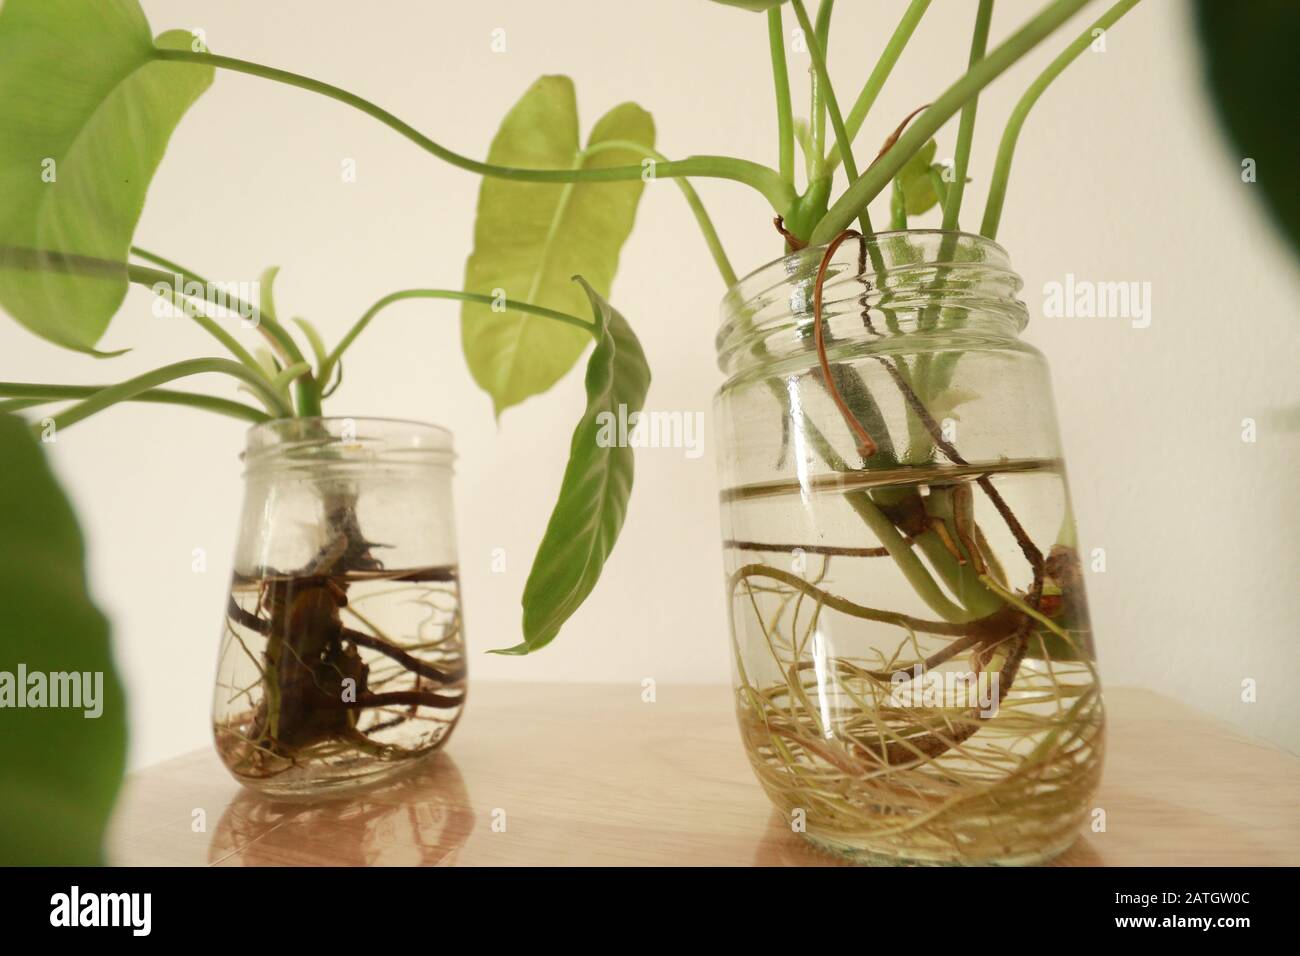 Philodendron domesticum oder spadelef philodendron in wiederverwendeten Glasgefäßen als einfache und nachhaltige Springtime inspirierte Heimdekoration Stockfoto